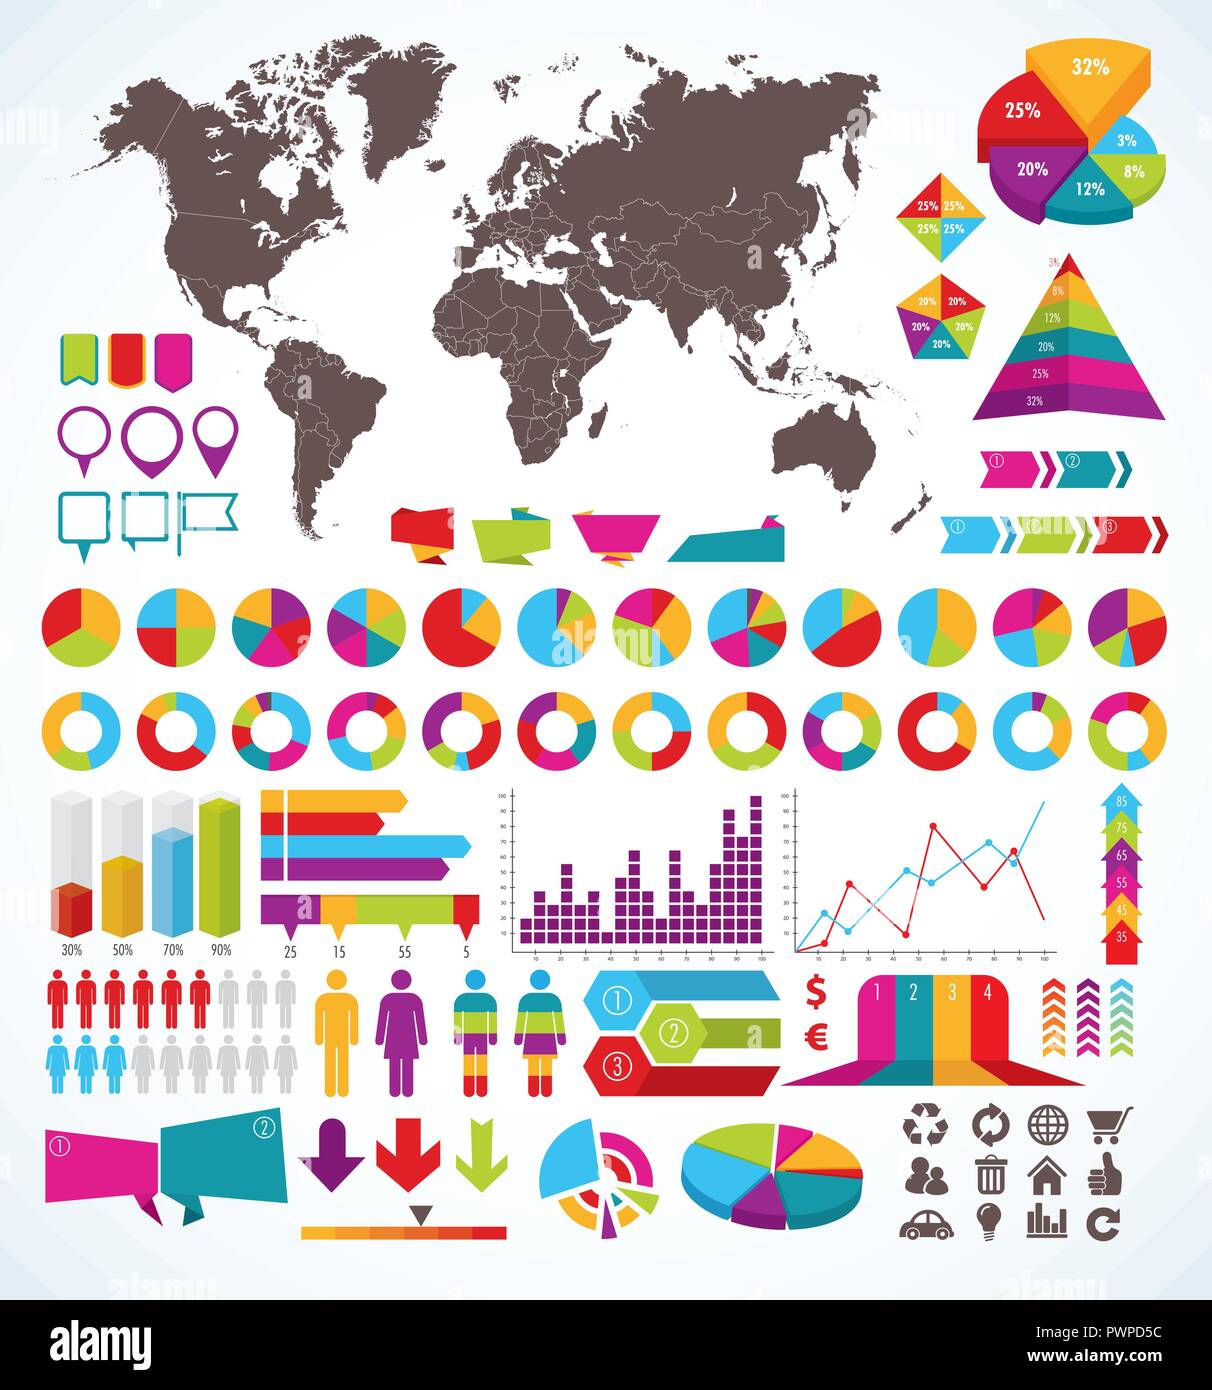 Festlegen von Elementen für Infografik für Ihr Design Stock Vektor